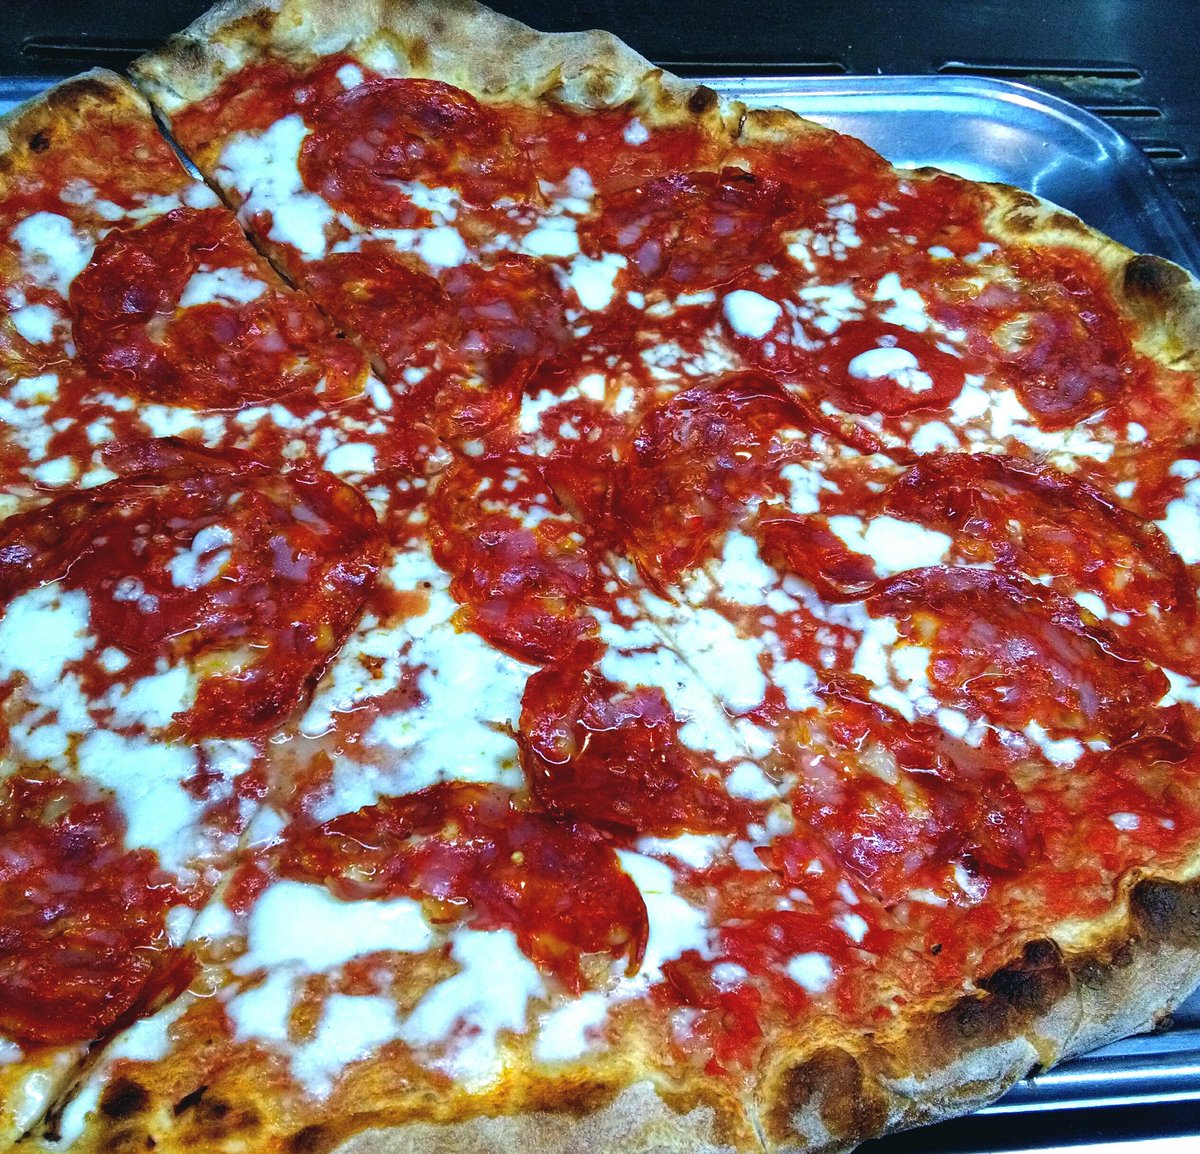 Lievitazione 72h #lungalievitazione #pizza #pizzatime #mywork  #ladypizza #pizzeria #beneventopizza